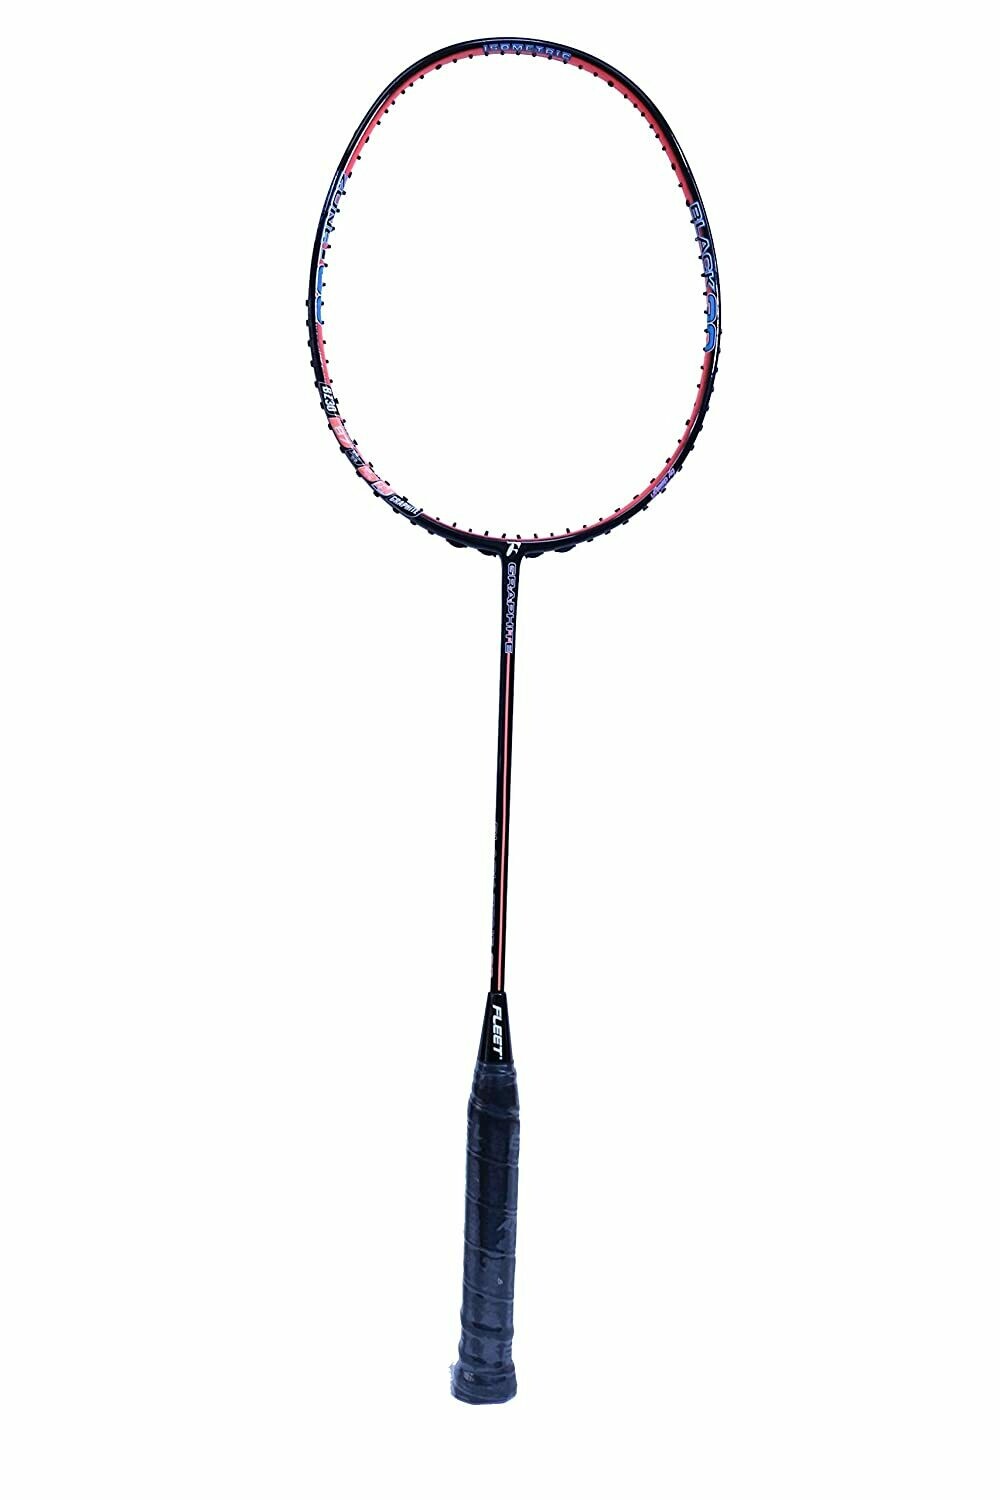 Fleet Black Zone 30 Badminton Racquet